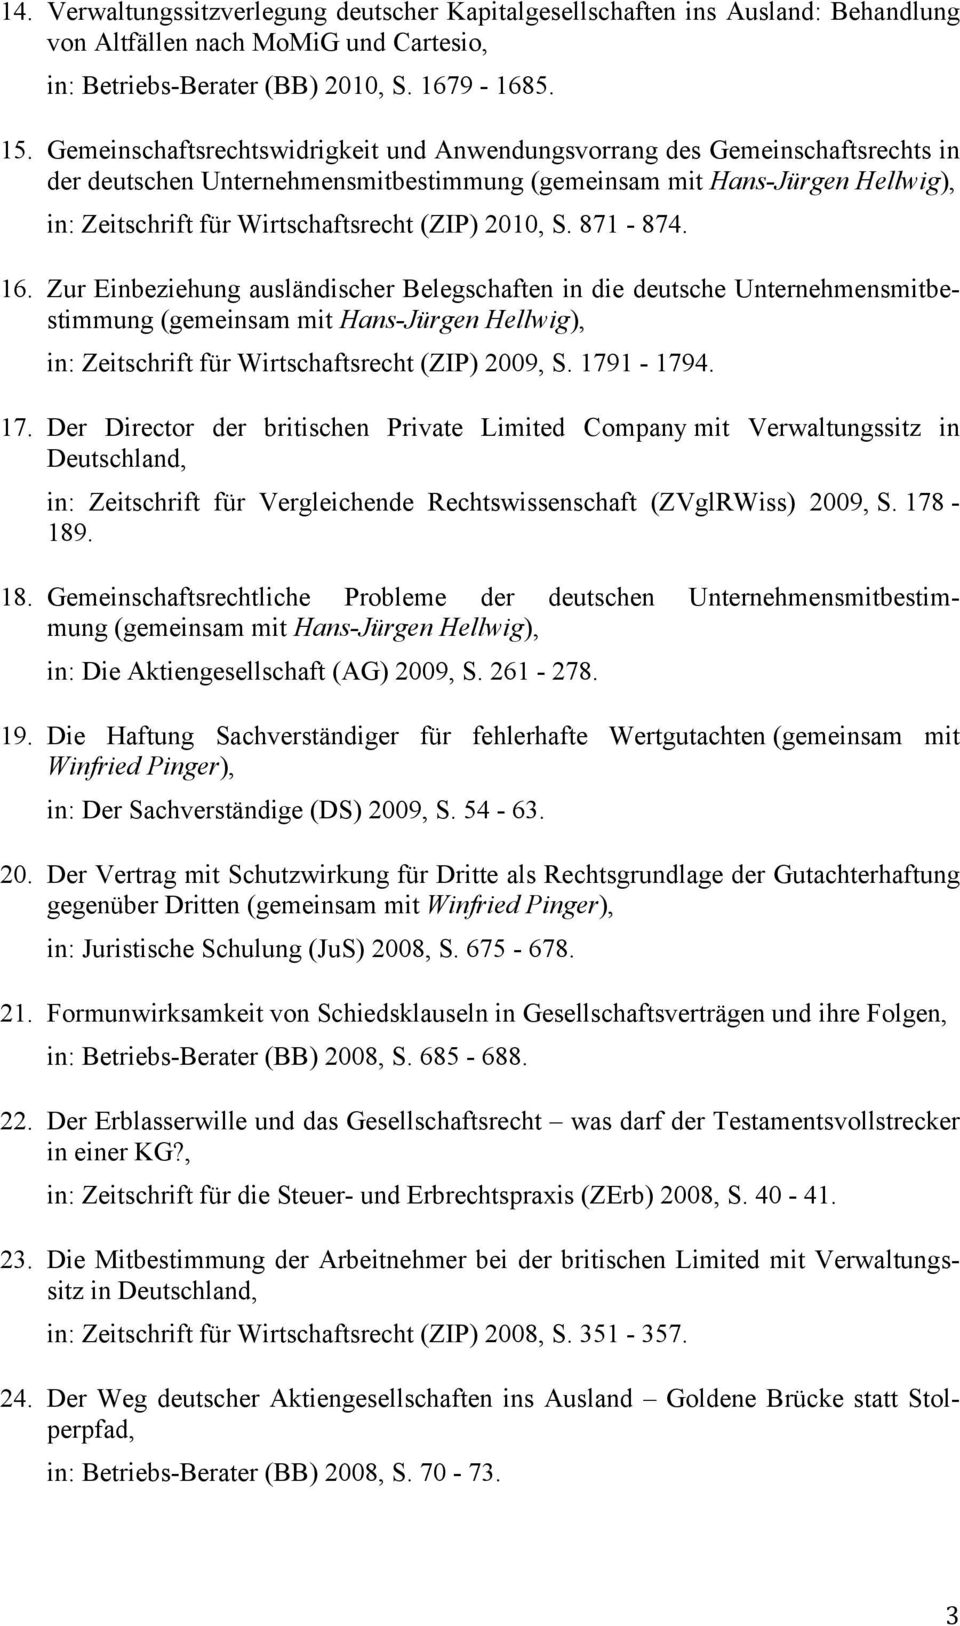 Zur Einbeziehung ausländischer Belegschaften in die deutsche Unternehmensmitbestimmung in: Zeitschrift für Wirtschaftsrecht (ZIP) 2009, S. 179